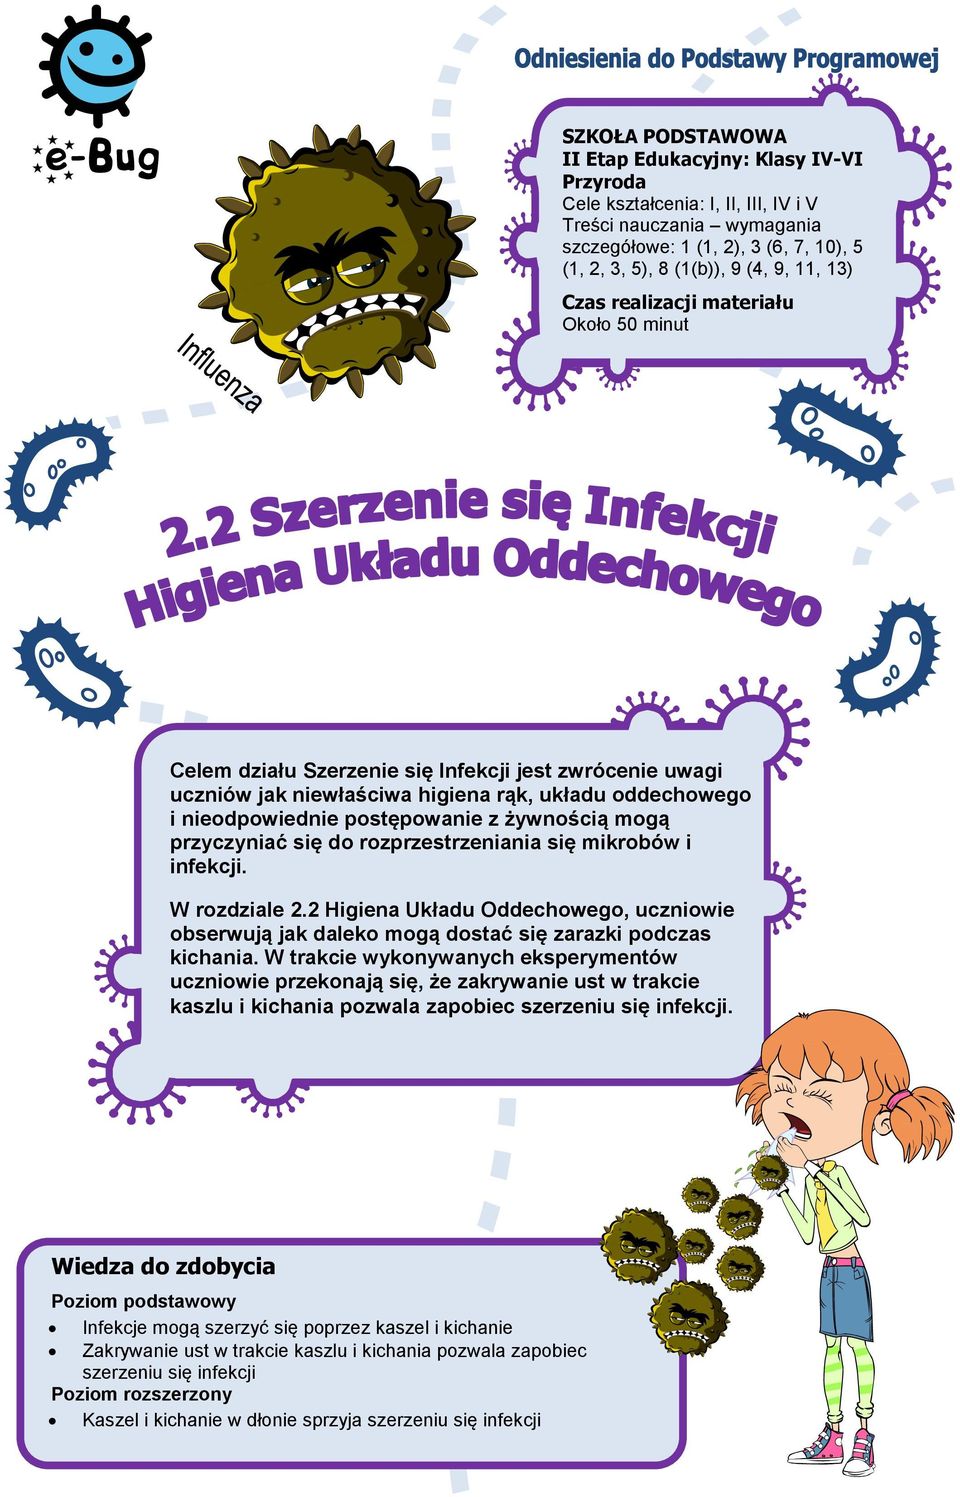 mogą przyczyniać się do rozprzestrzeniania się mikrobów i infekcji. W rozdziale 2.2, uczniowie obserwują jak daleko mogą dostać się zarazki podczas kichania.